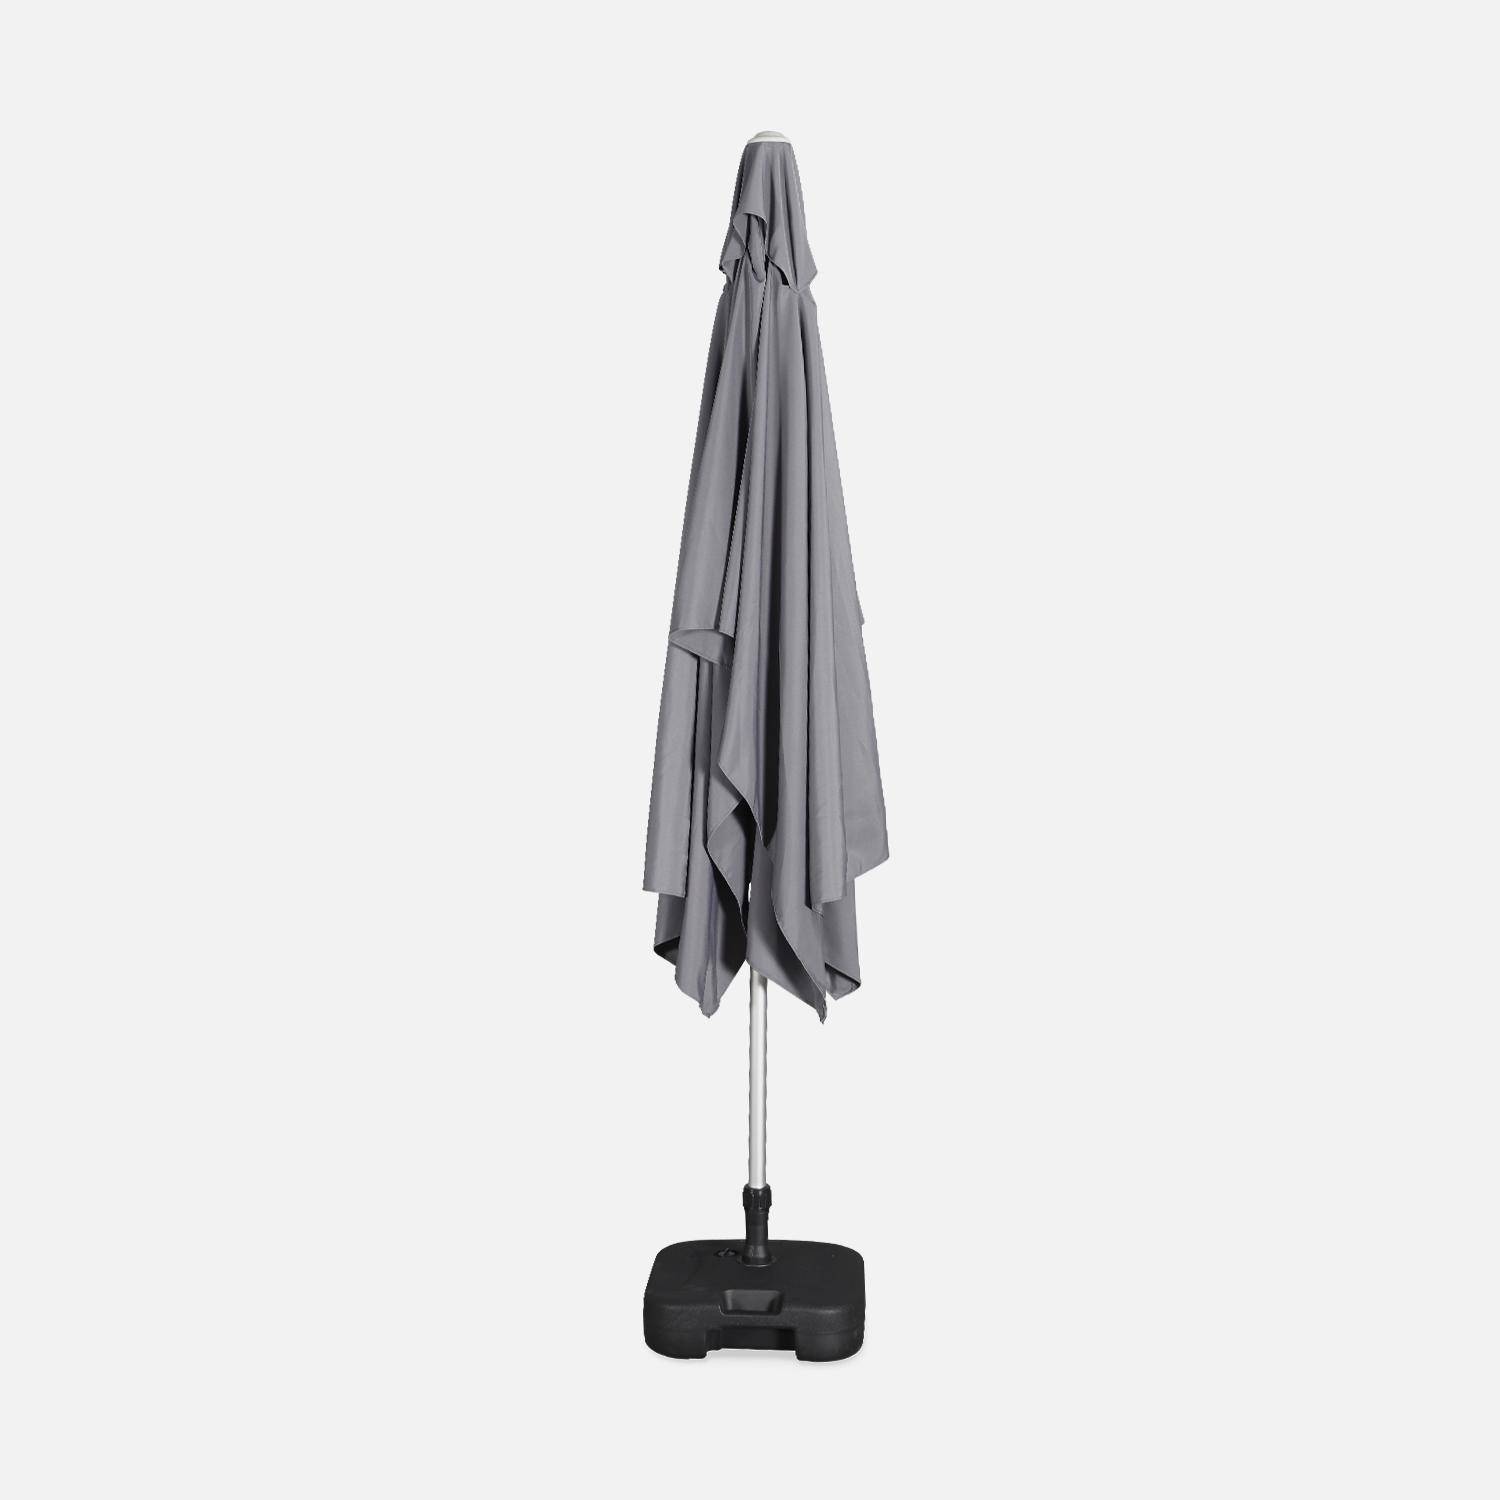 Parasol Wissant, 2x3m, couleur gris, mât central, aluminium anodisé orientable, manivelle d'ouverture  Photo6